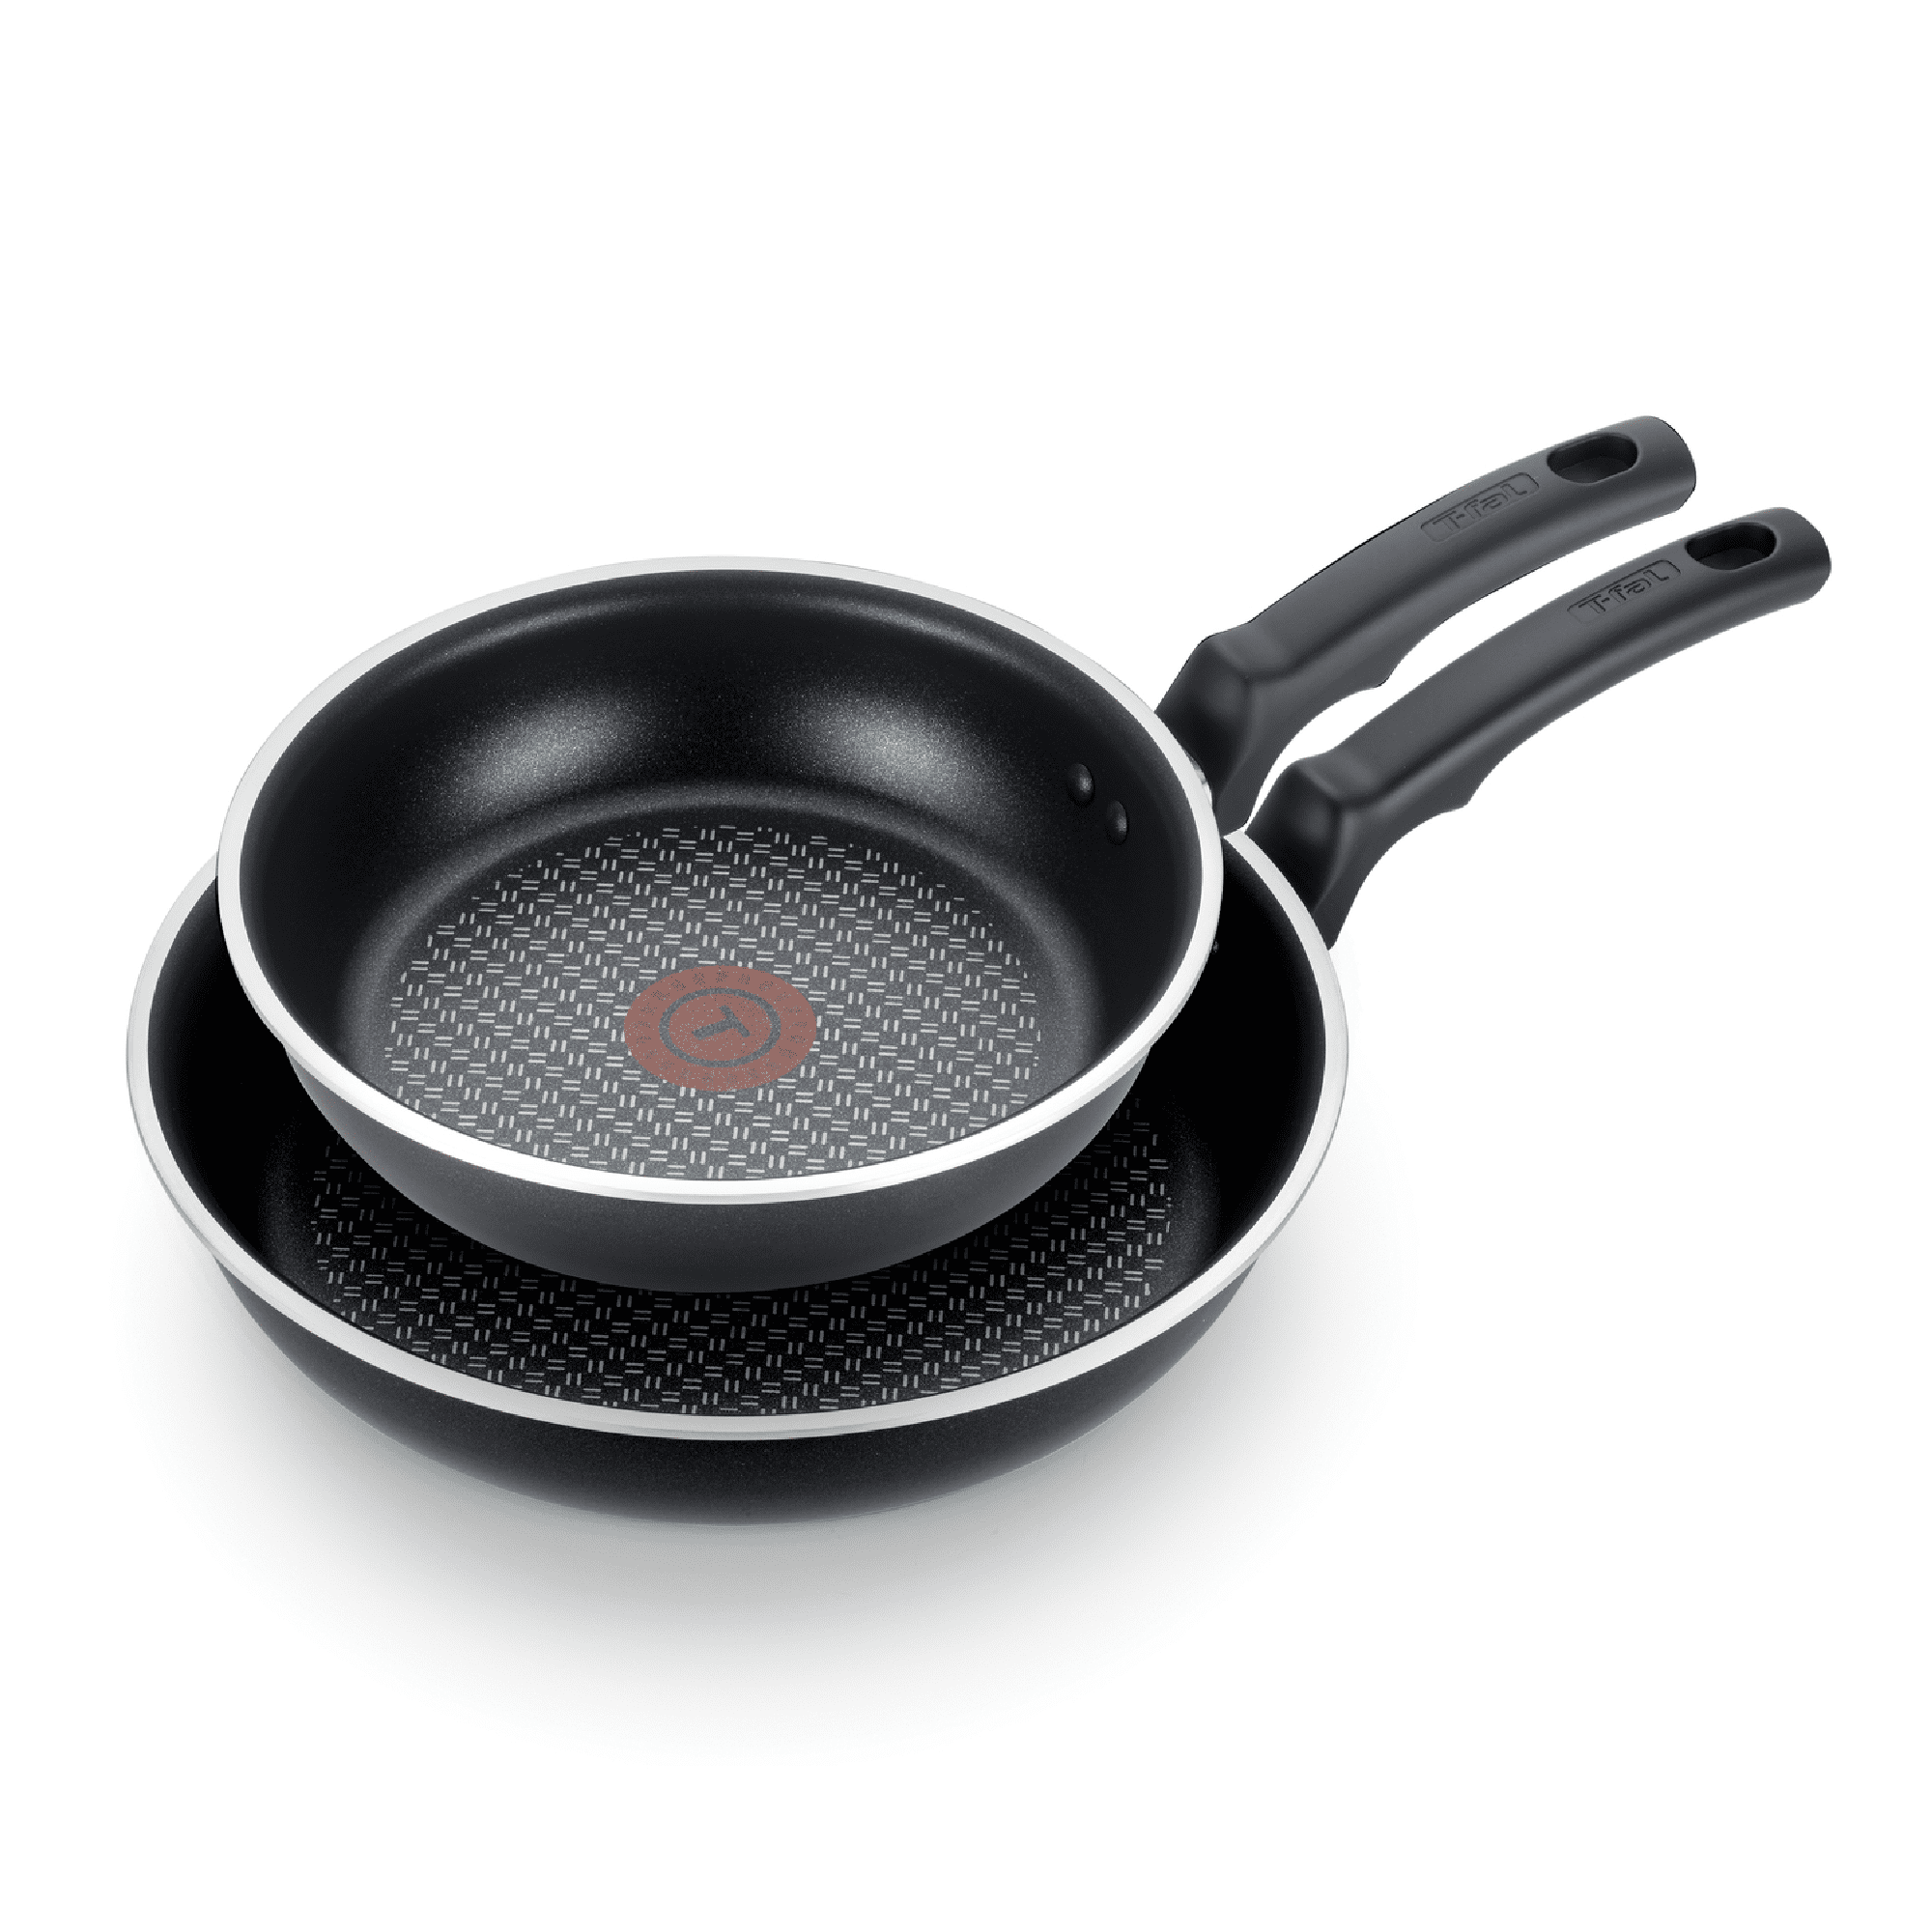 Thermo-Spot 5 Sizes Tefal So Tasty Titanium Non Stick Frying Pan 